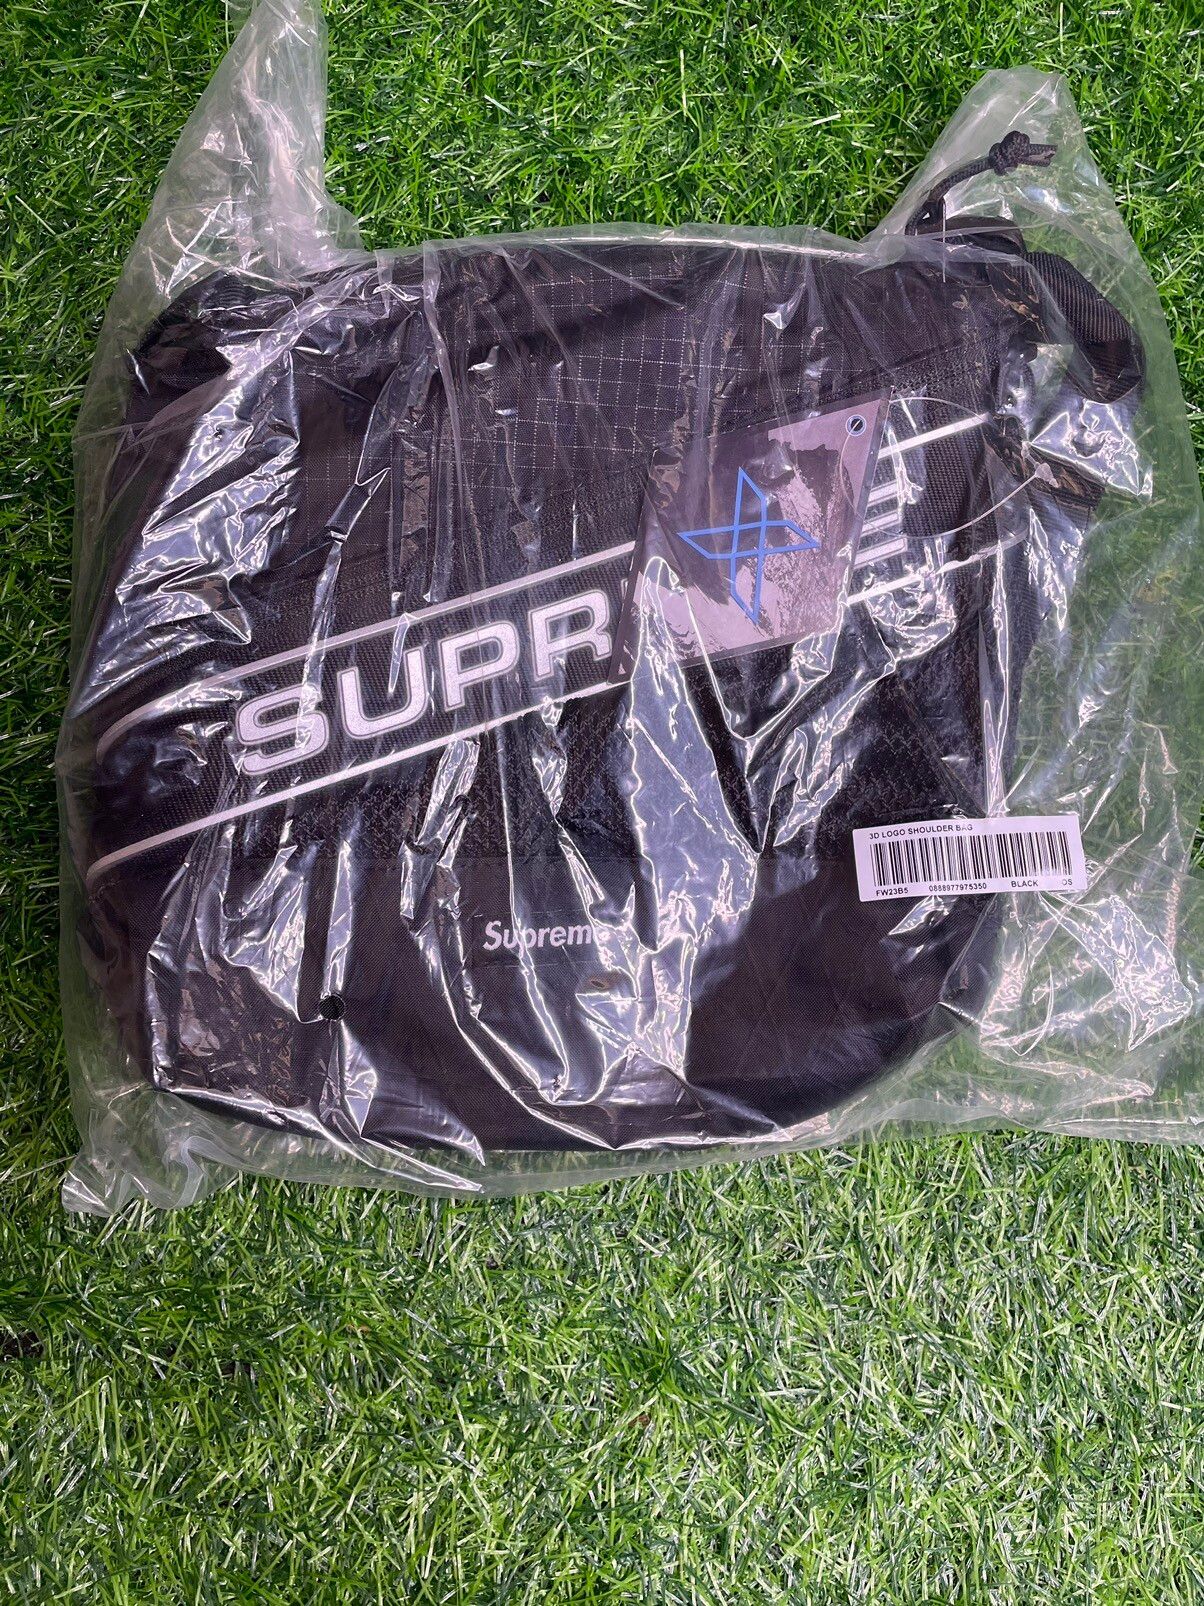 3D Logo Supreme Shoulder Bag